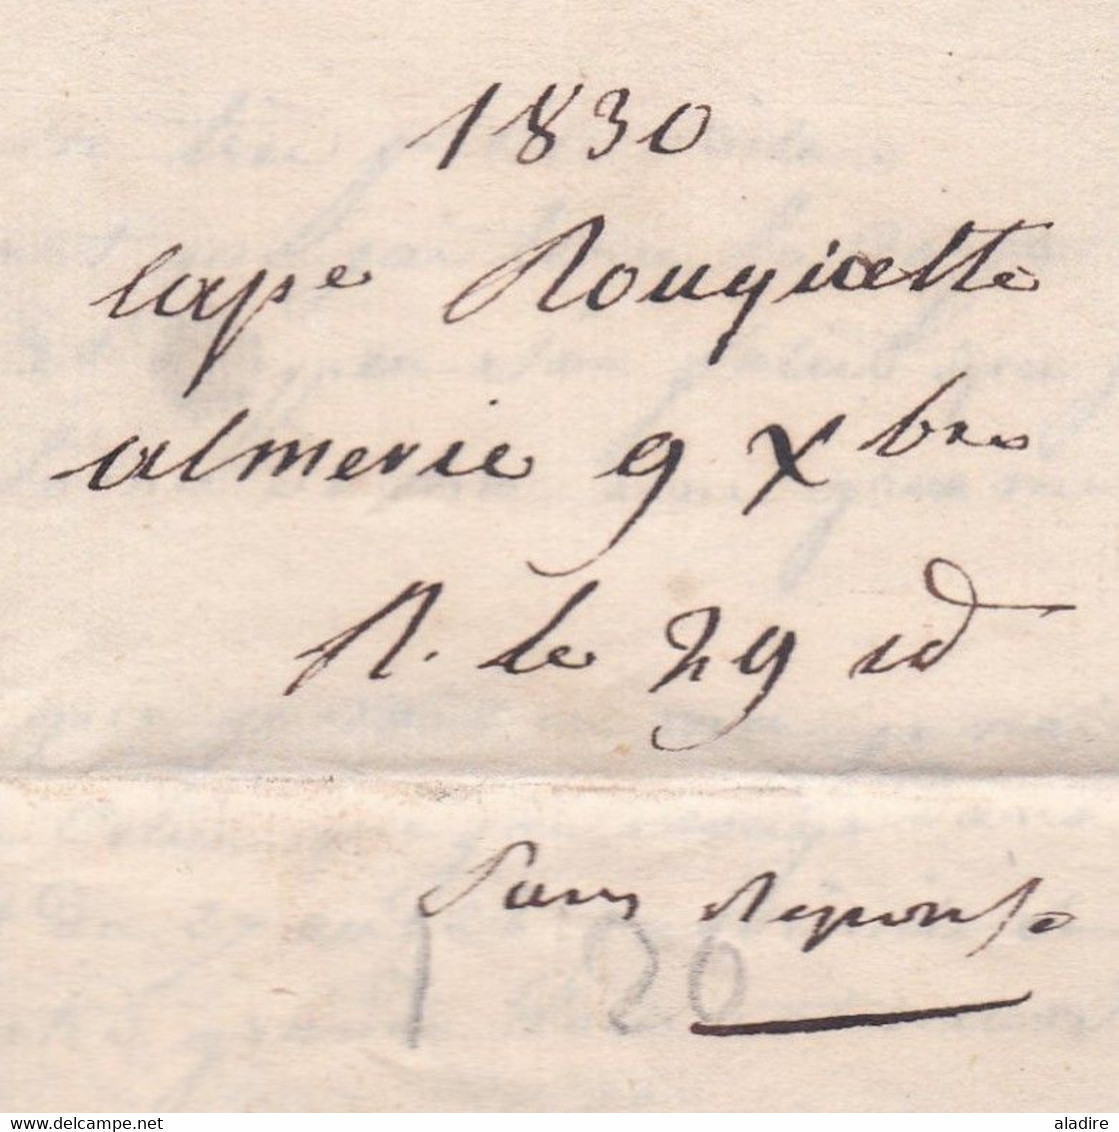 1830 - Lettre pliée avec correspondance en français de 2 pages d' Almeria, Andalucia, Espana vers Marseille, France